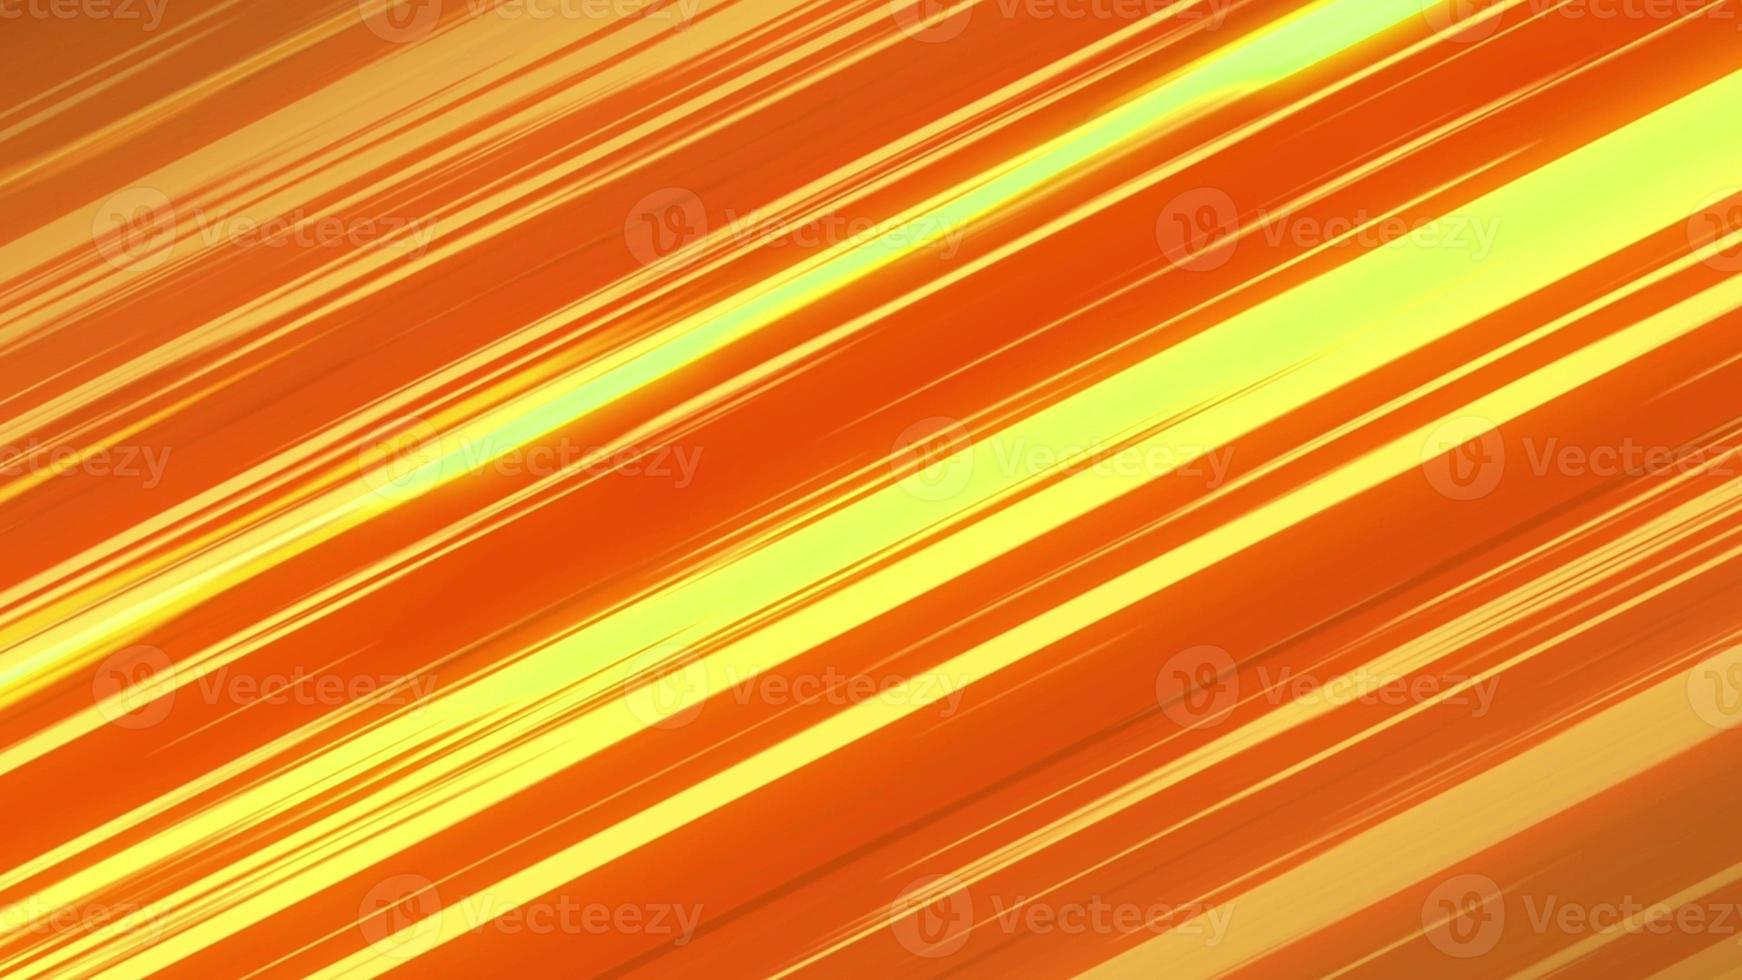 Hình nền anime trừu tượng màu vàng cam: Bạn muốn trang trí màn hình điện thoại hay máy tính của mình với những hình ảnh trừu tượng ấn tượng, màu sắc tươi sáng, đầy nghệ thuật? Hãy chiêm ngưỡng hình nền anime trừu tượng màu vàng cam đầy hoa mỹ này để tận hưởng sự độc đáo và tươi mới mà nó mang lại.